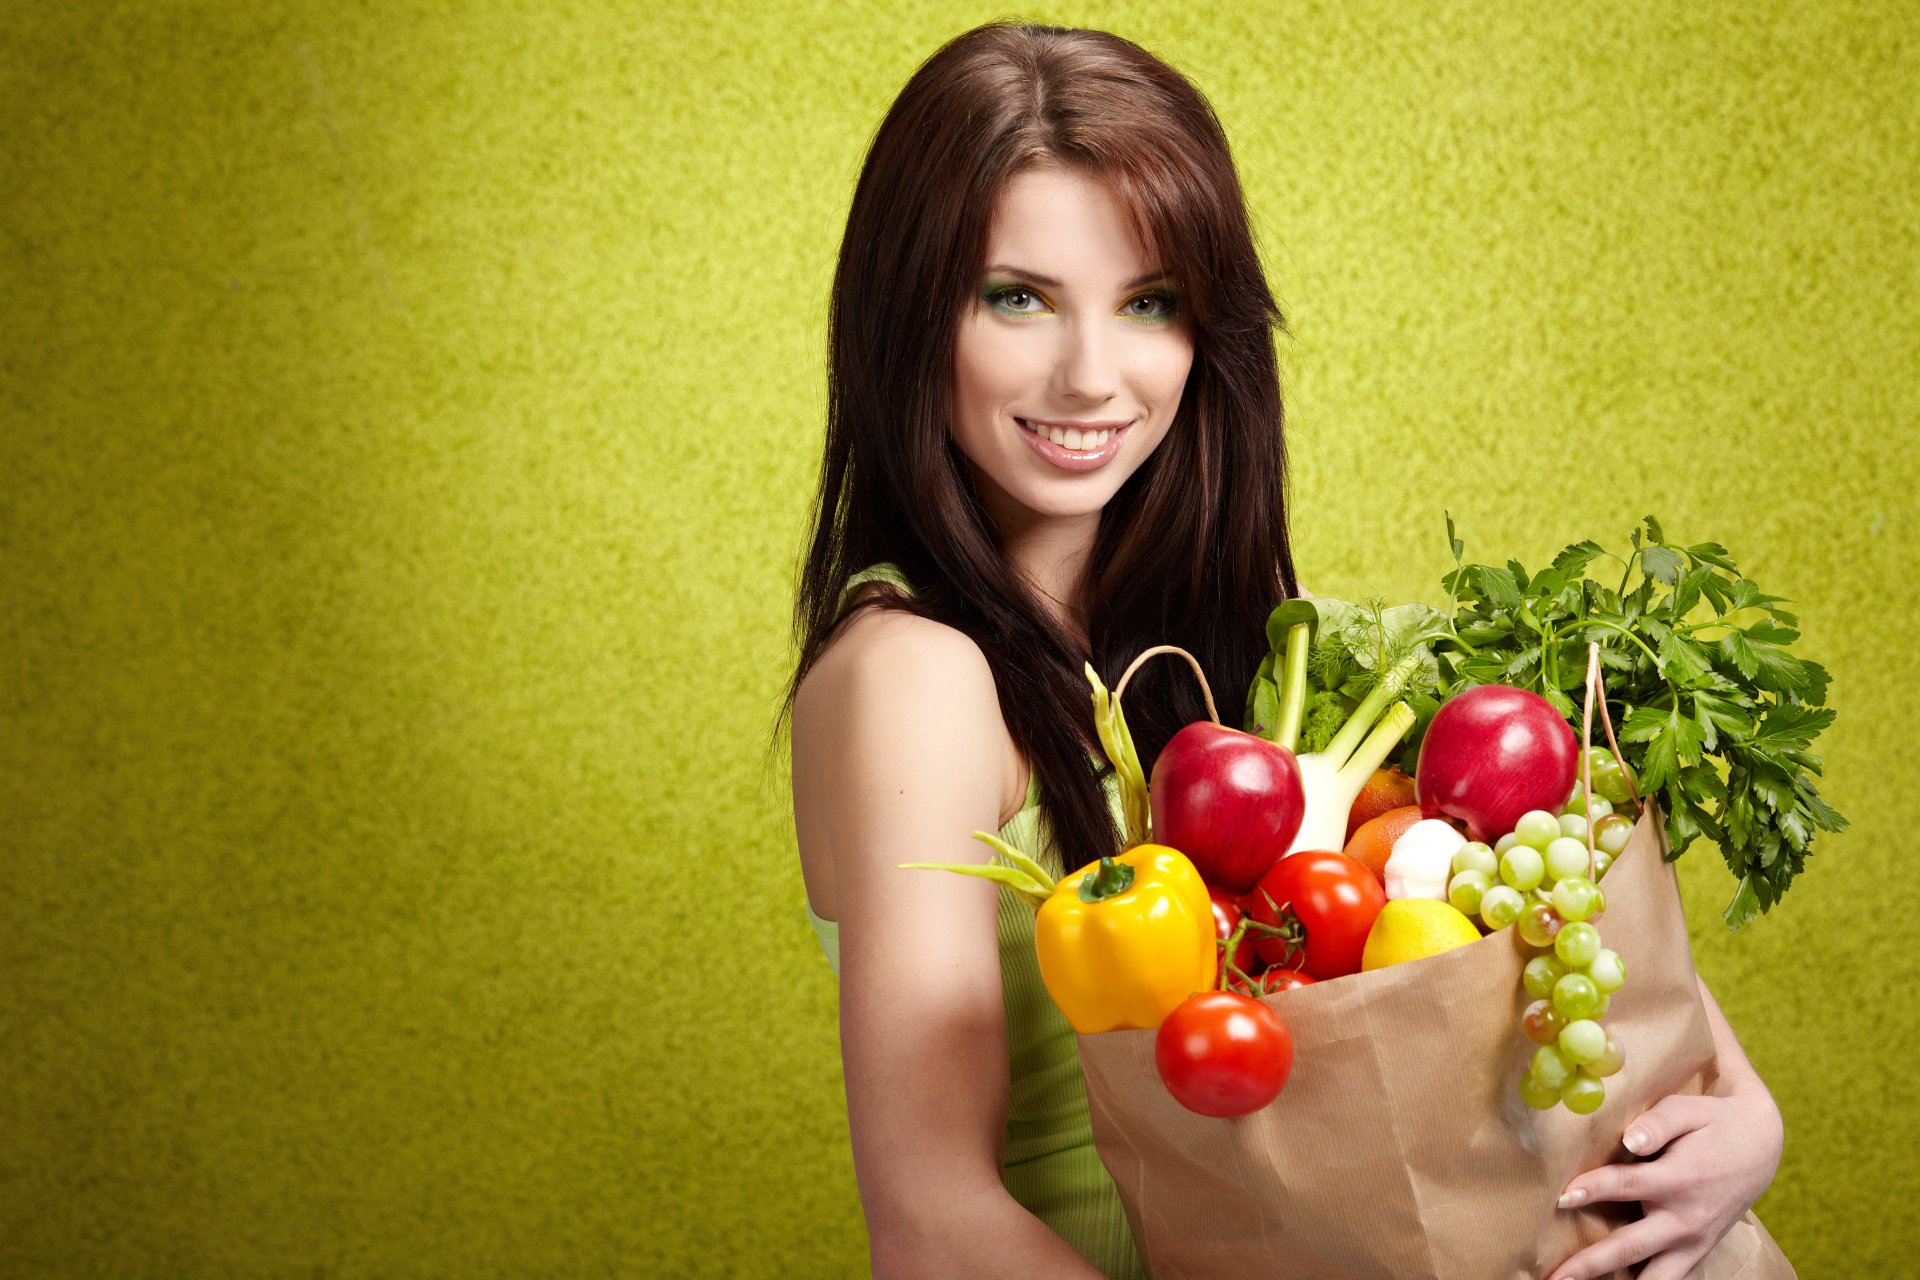 девушка шатенка макияж улыбка бумажный пакет овощи фрукты покупки виноград лук перец помидоры яблоки чеснок лимон зелень